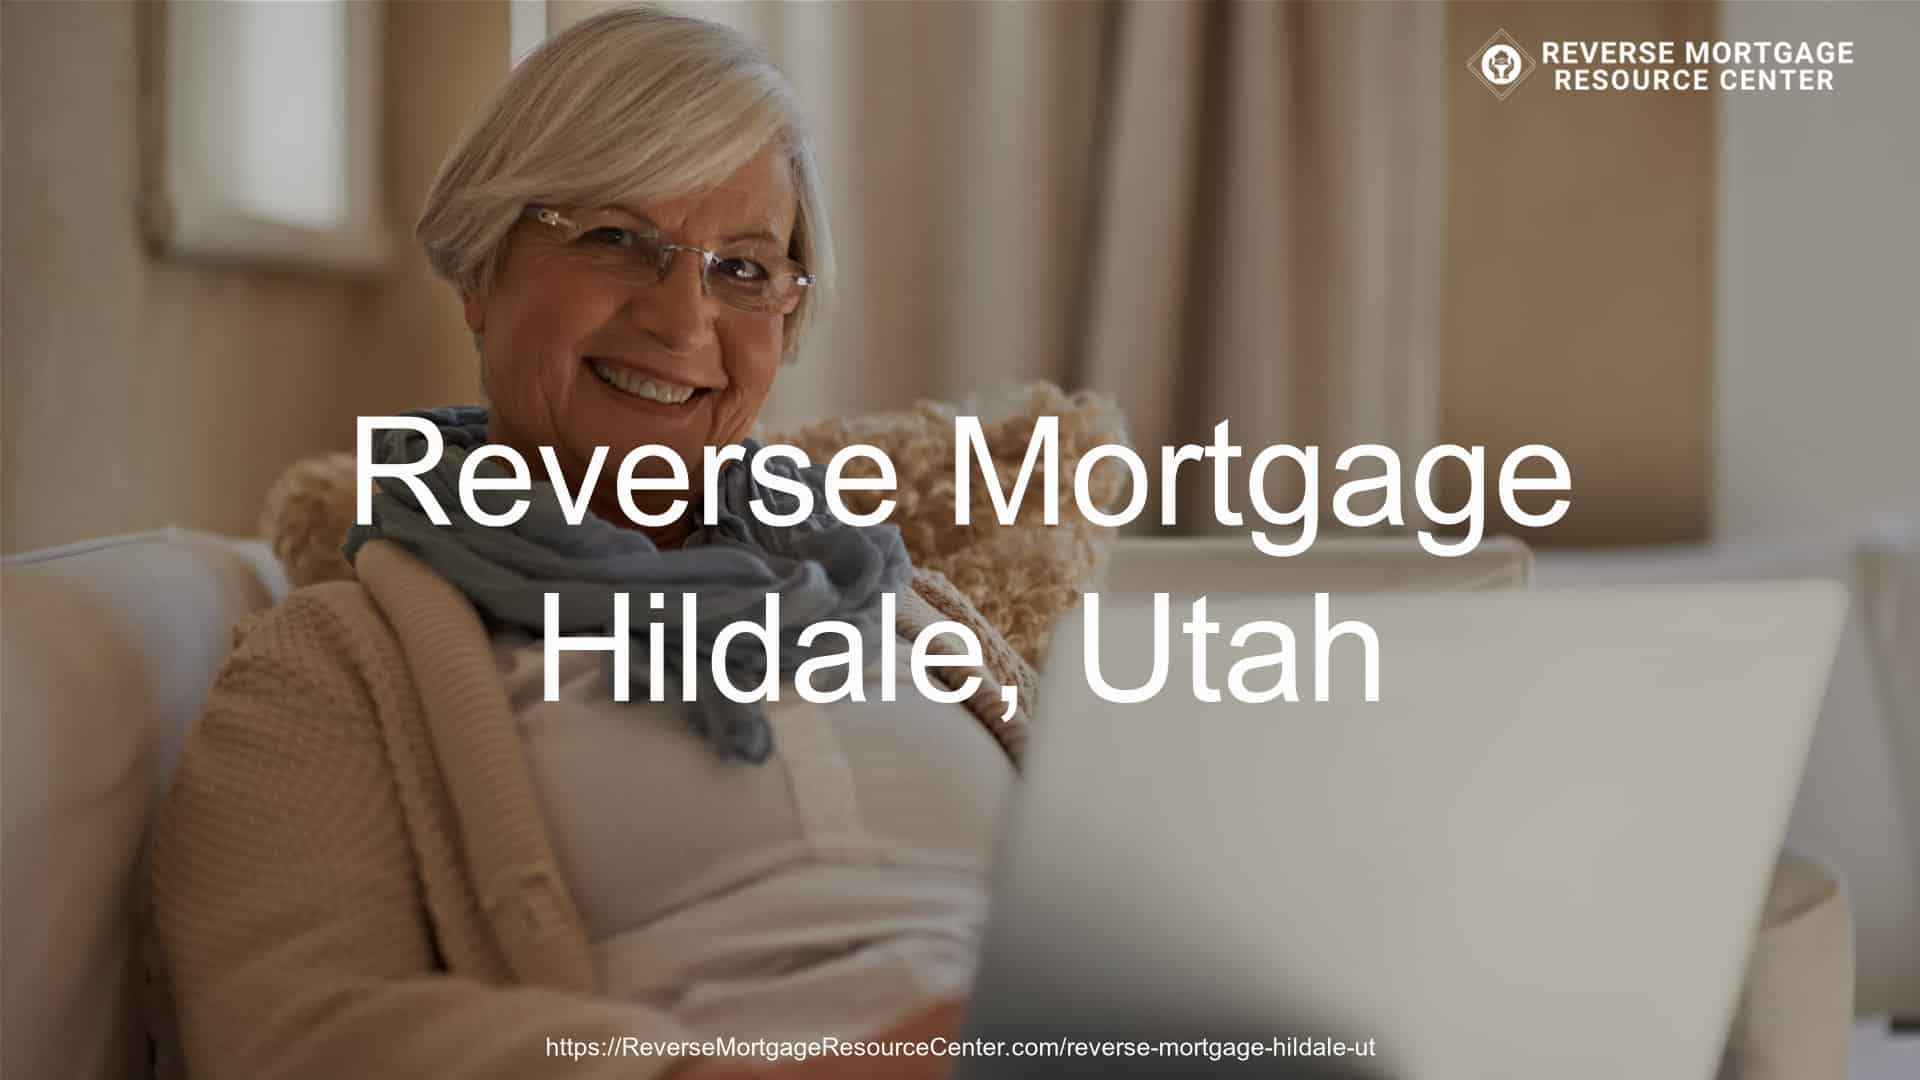 Reverse Mortgage Loans in Hildale Utah